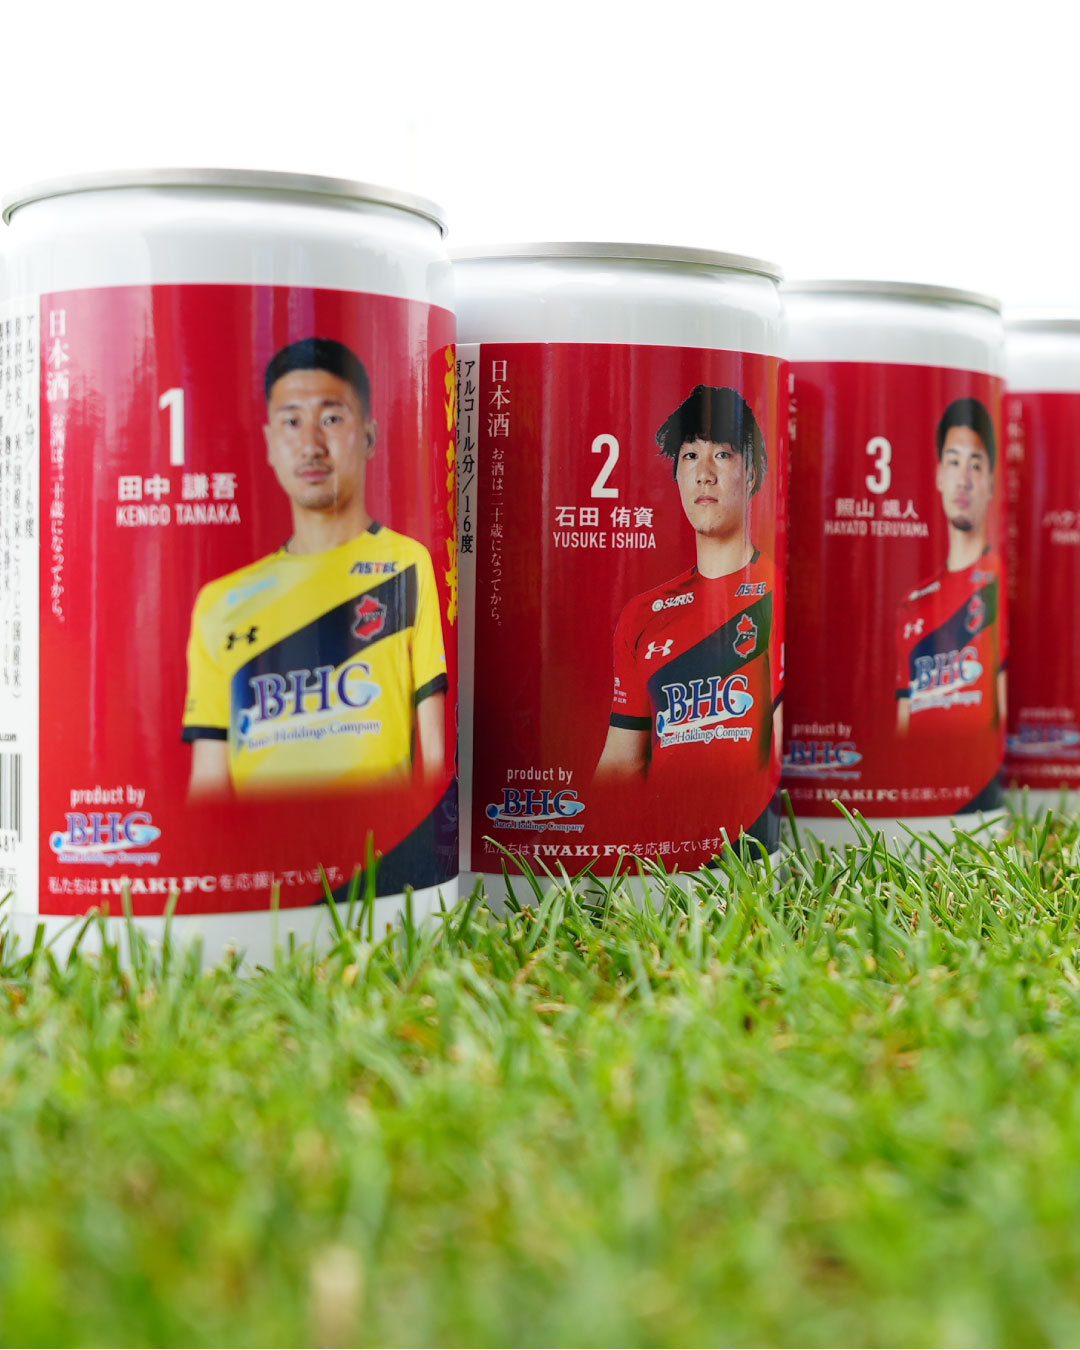 磐栄ホールディングスにて「御湖鶴 いわきFC選手ラベル缶」販売開始のお知らせ